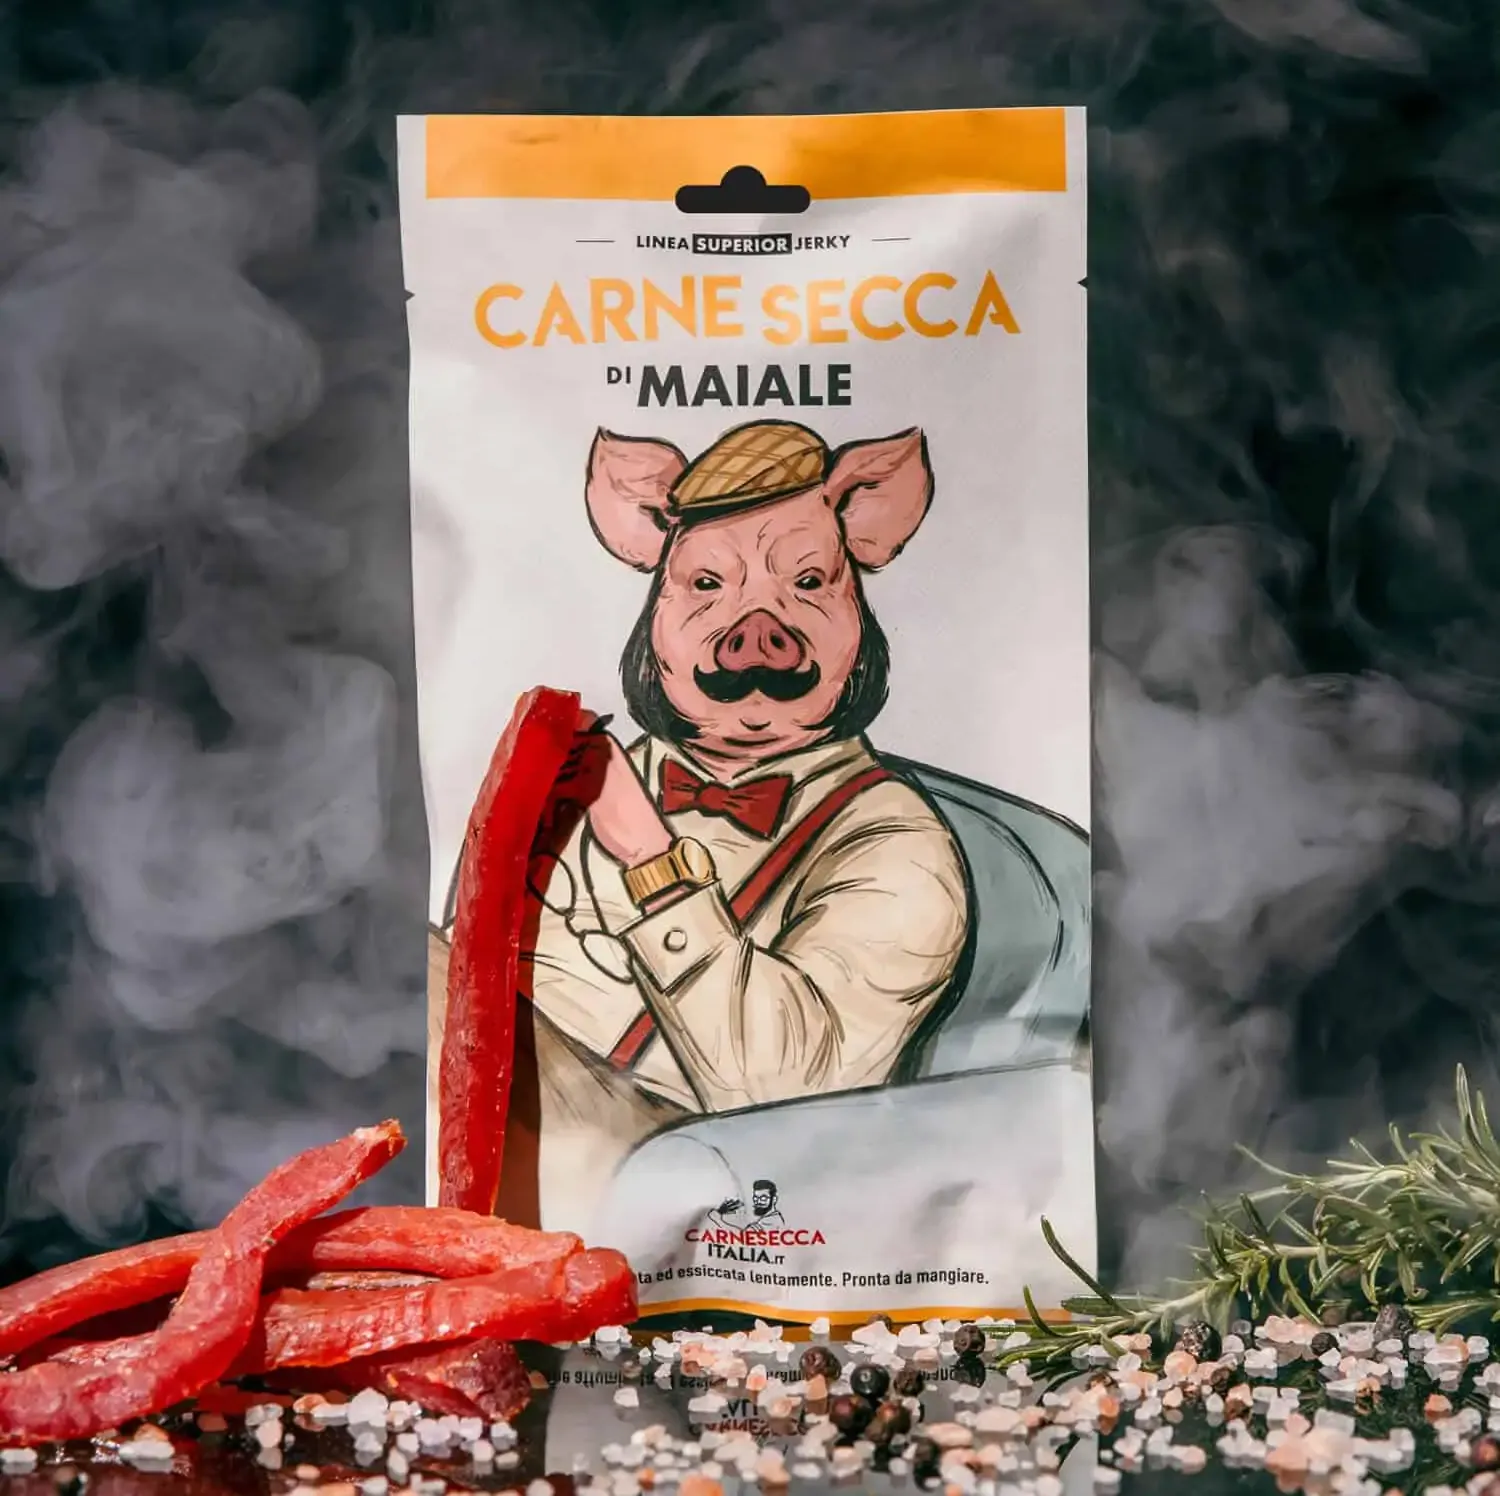 Carne secca affumicata di maiale 40g - superior jerky - carne secca italia